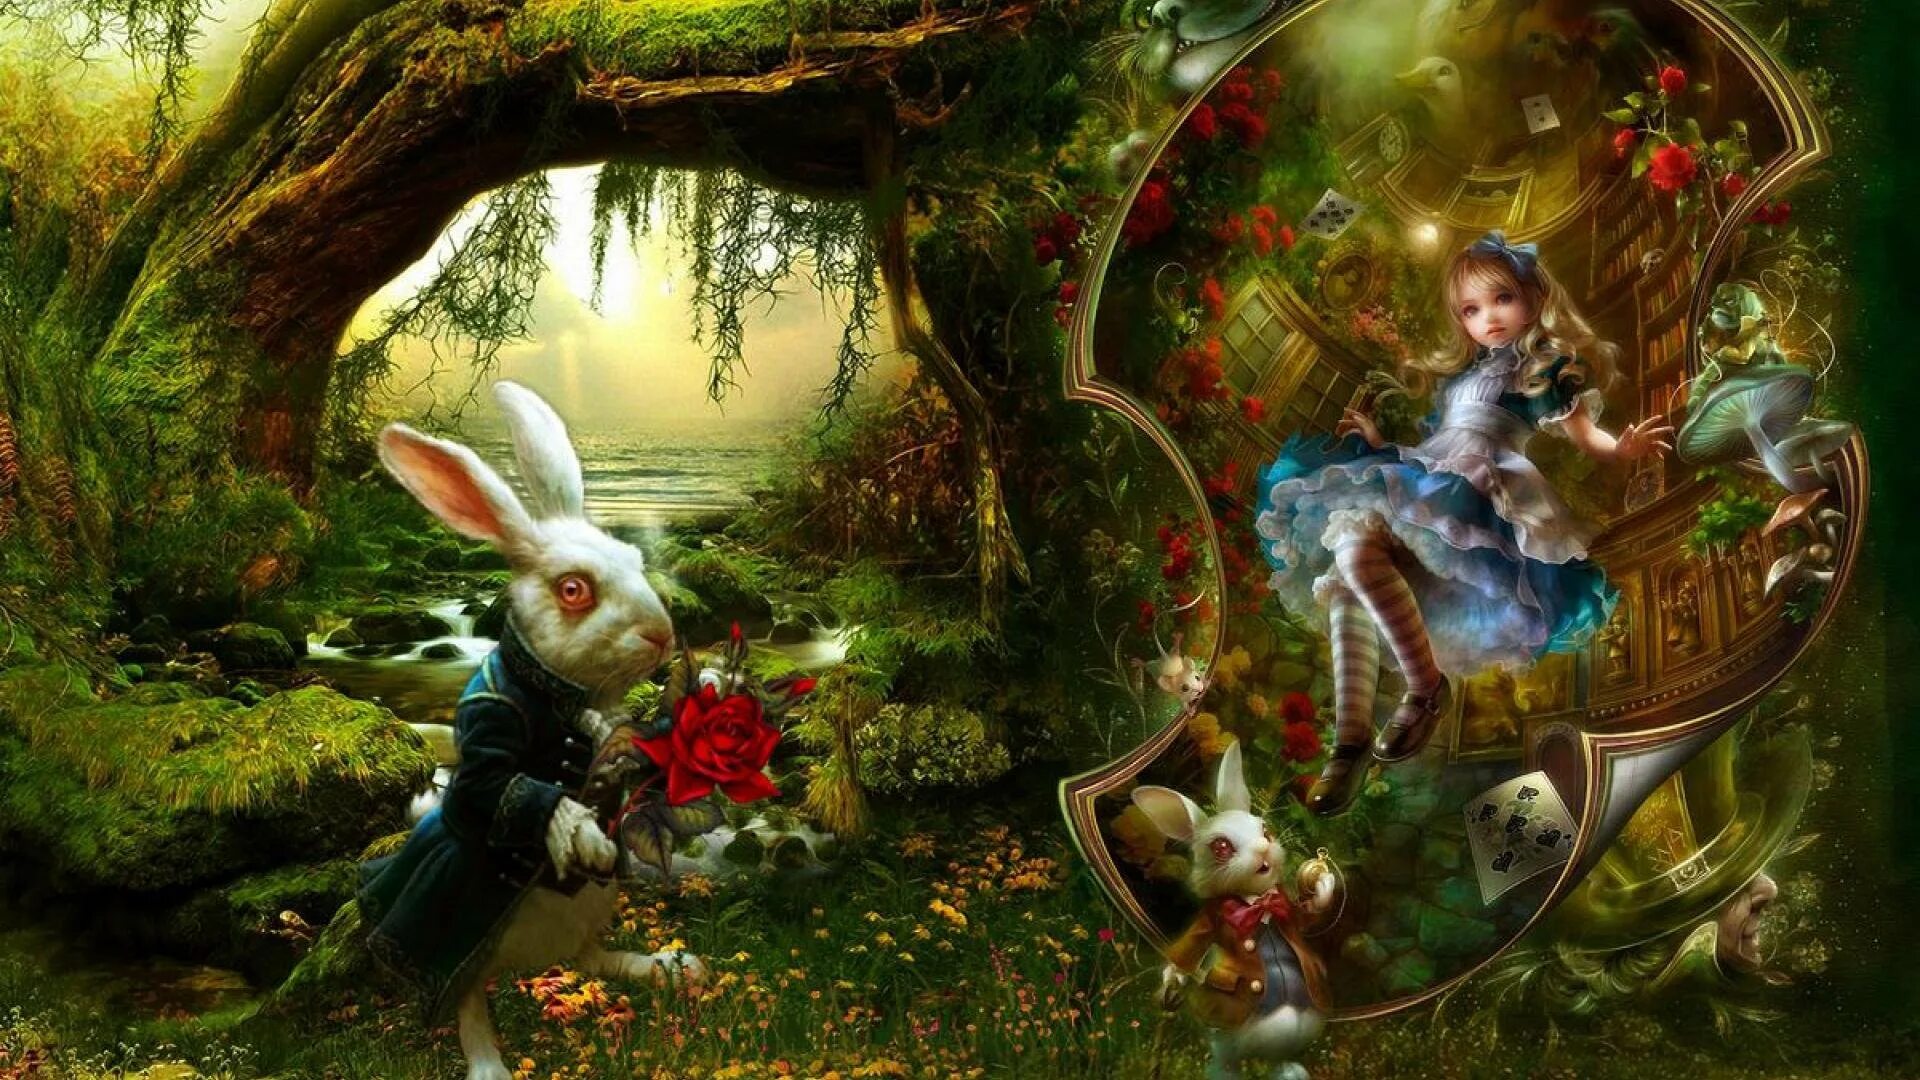 Мир страны чудес. Иллюстрации Хизер Тойрер Алиса в стране чудес. Алиса в стране чудес Волшебный лес. Сказочный фон Алиса в стране чудес. Сказочный лес Алиса в стране чудес.